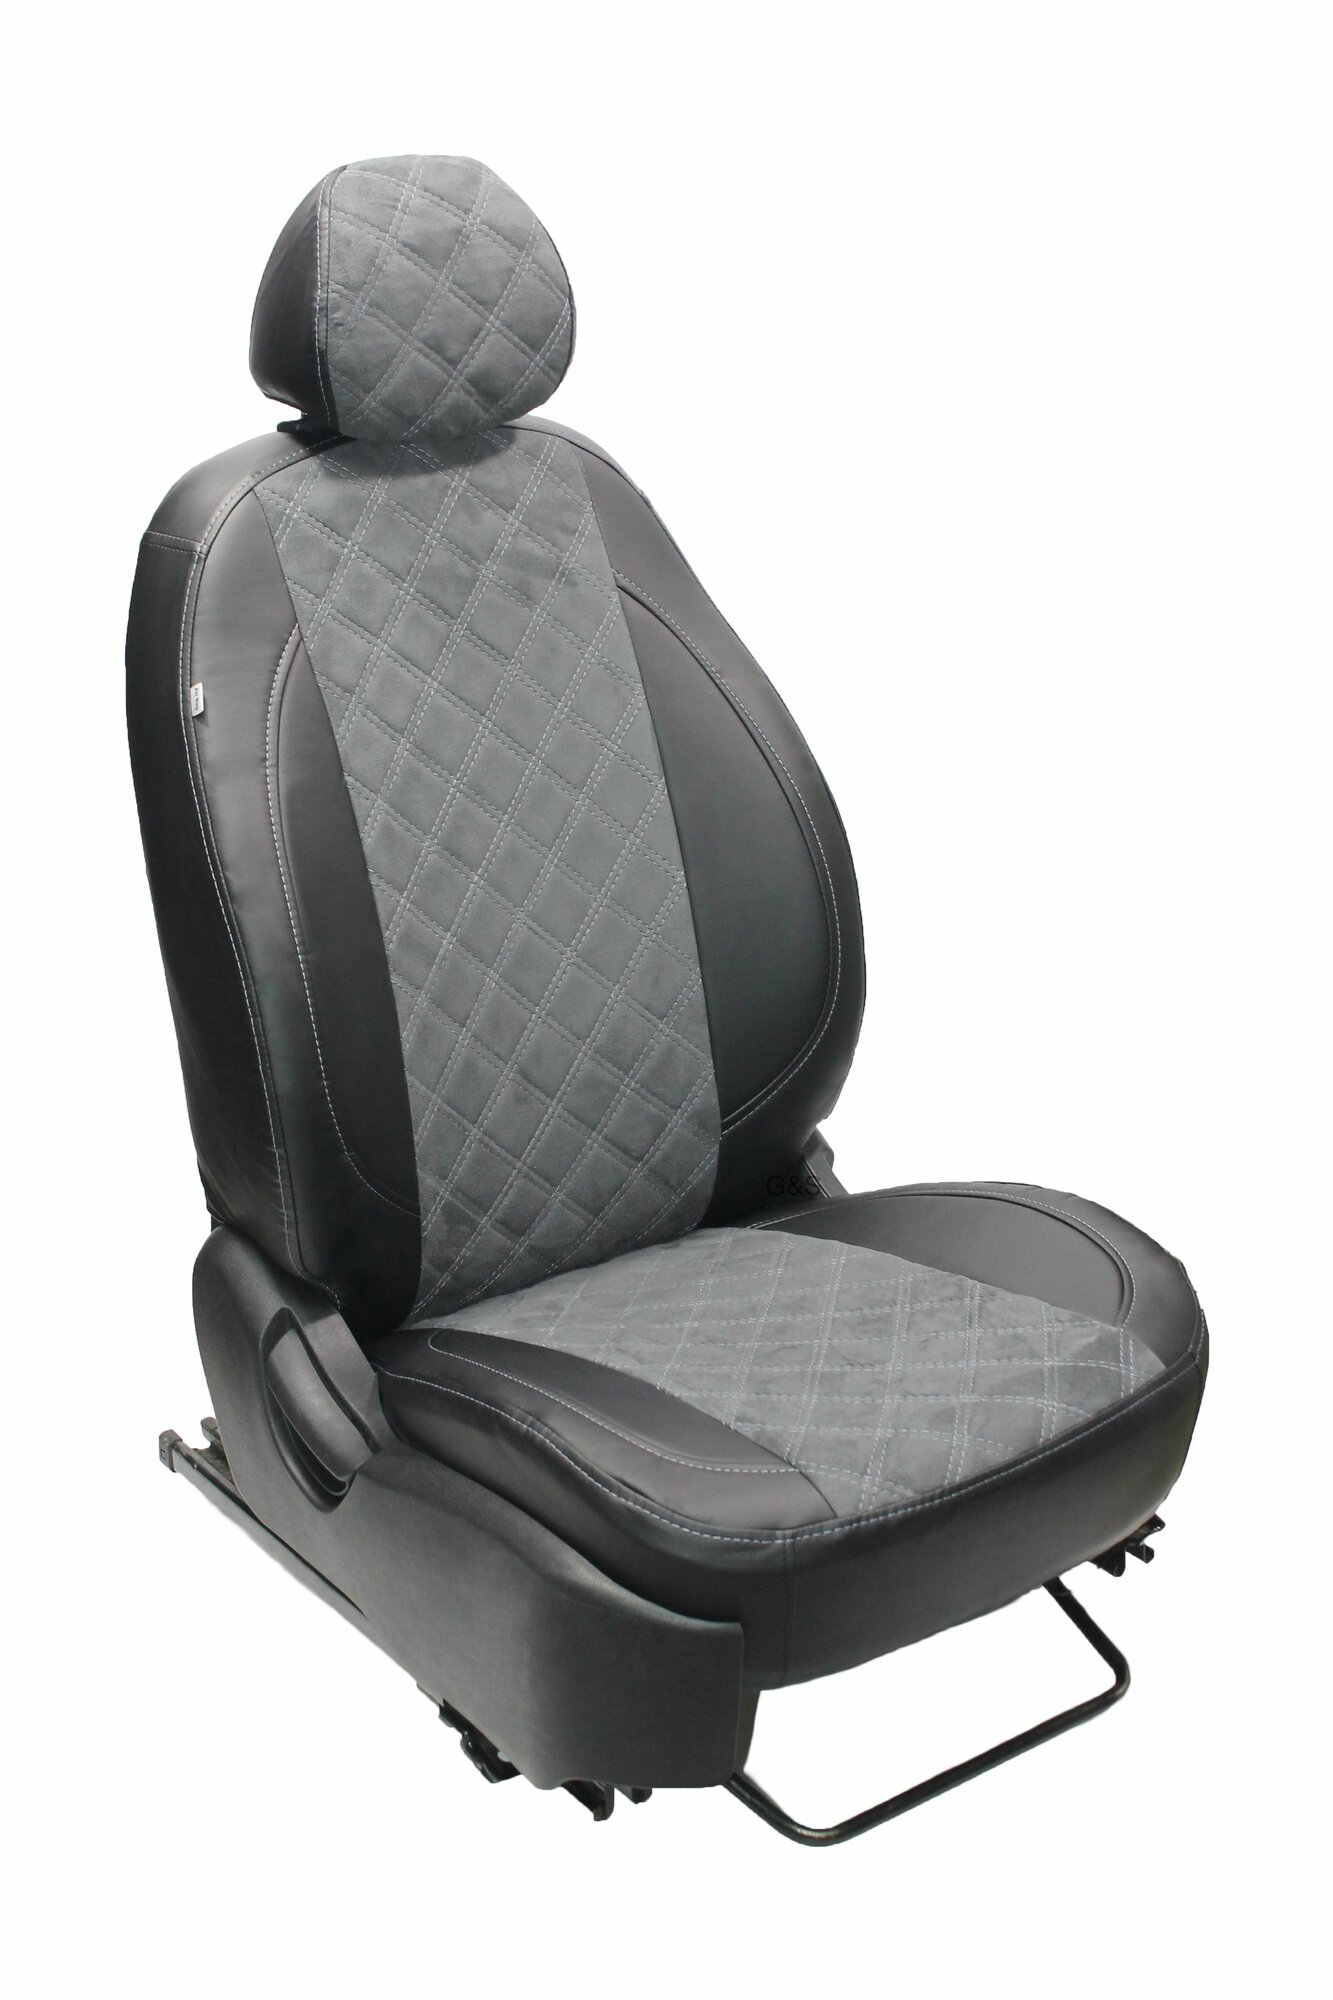 Чехлы для автомобильных сидений комплект Premium на CHEVROLET LACETTI (2004-н. в.) седан, хэтчбек, универсал, авточехлы модельные экокожа, серая вставка алькантара ромб